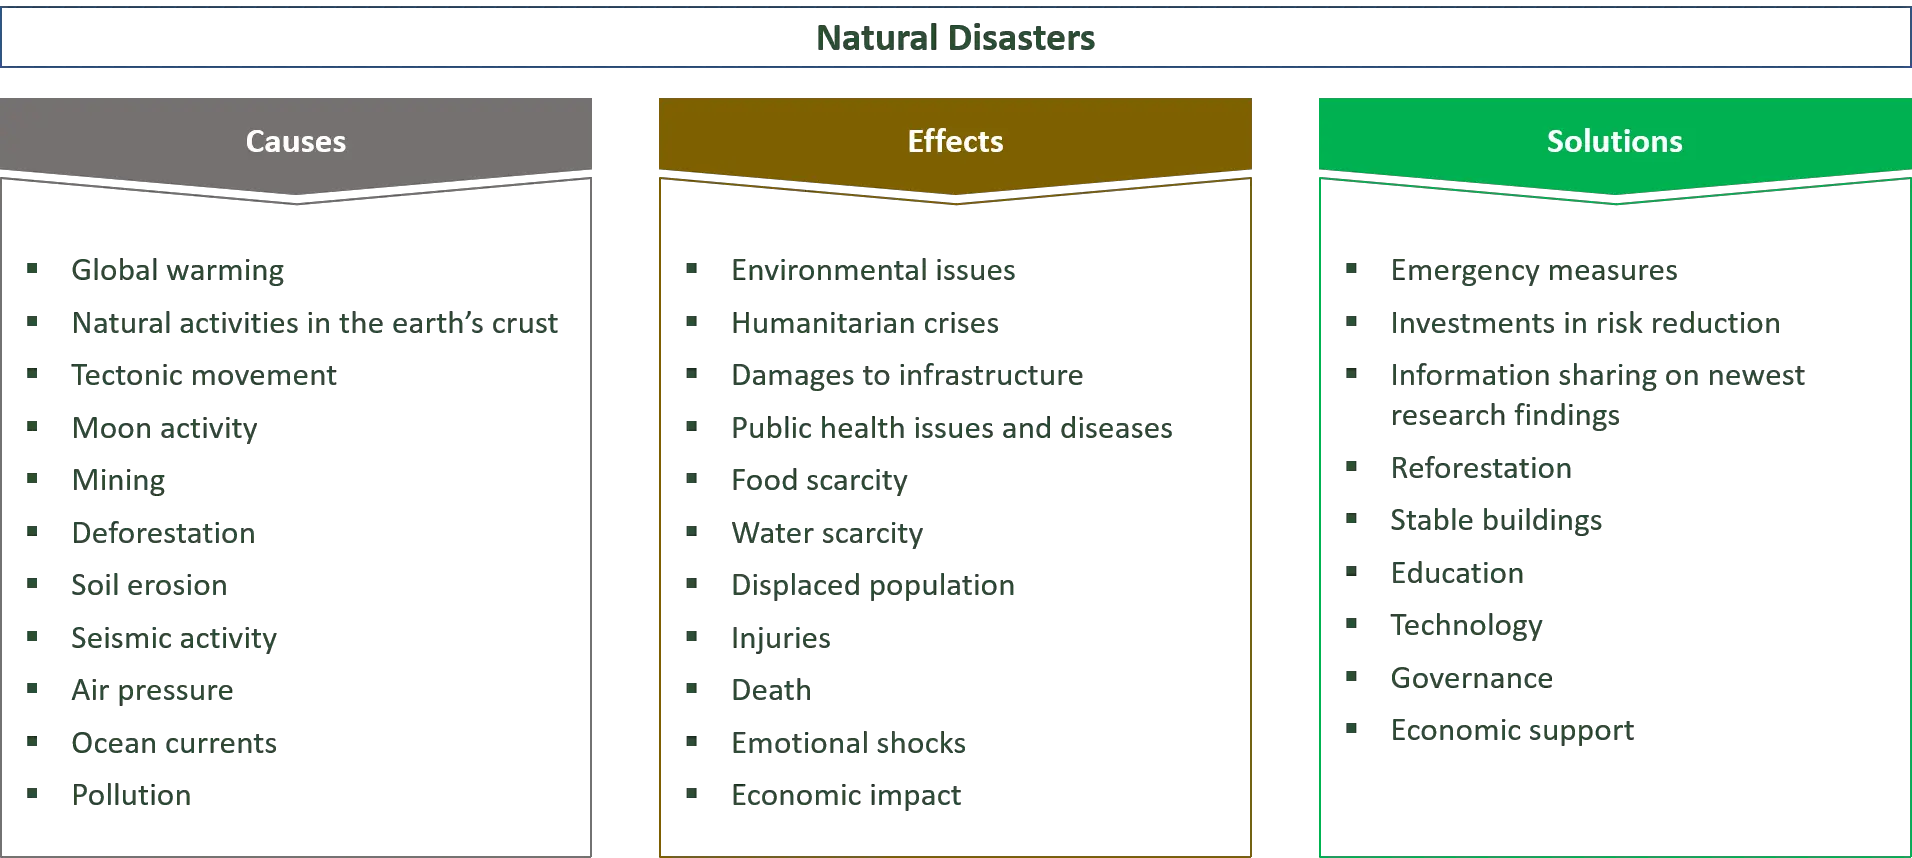 a természeti katasztrófák okai, hatásai és megoldásai